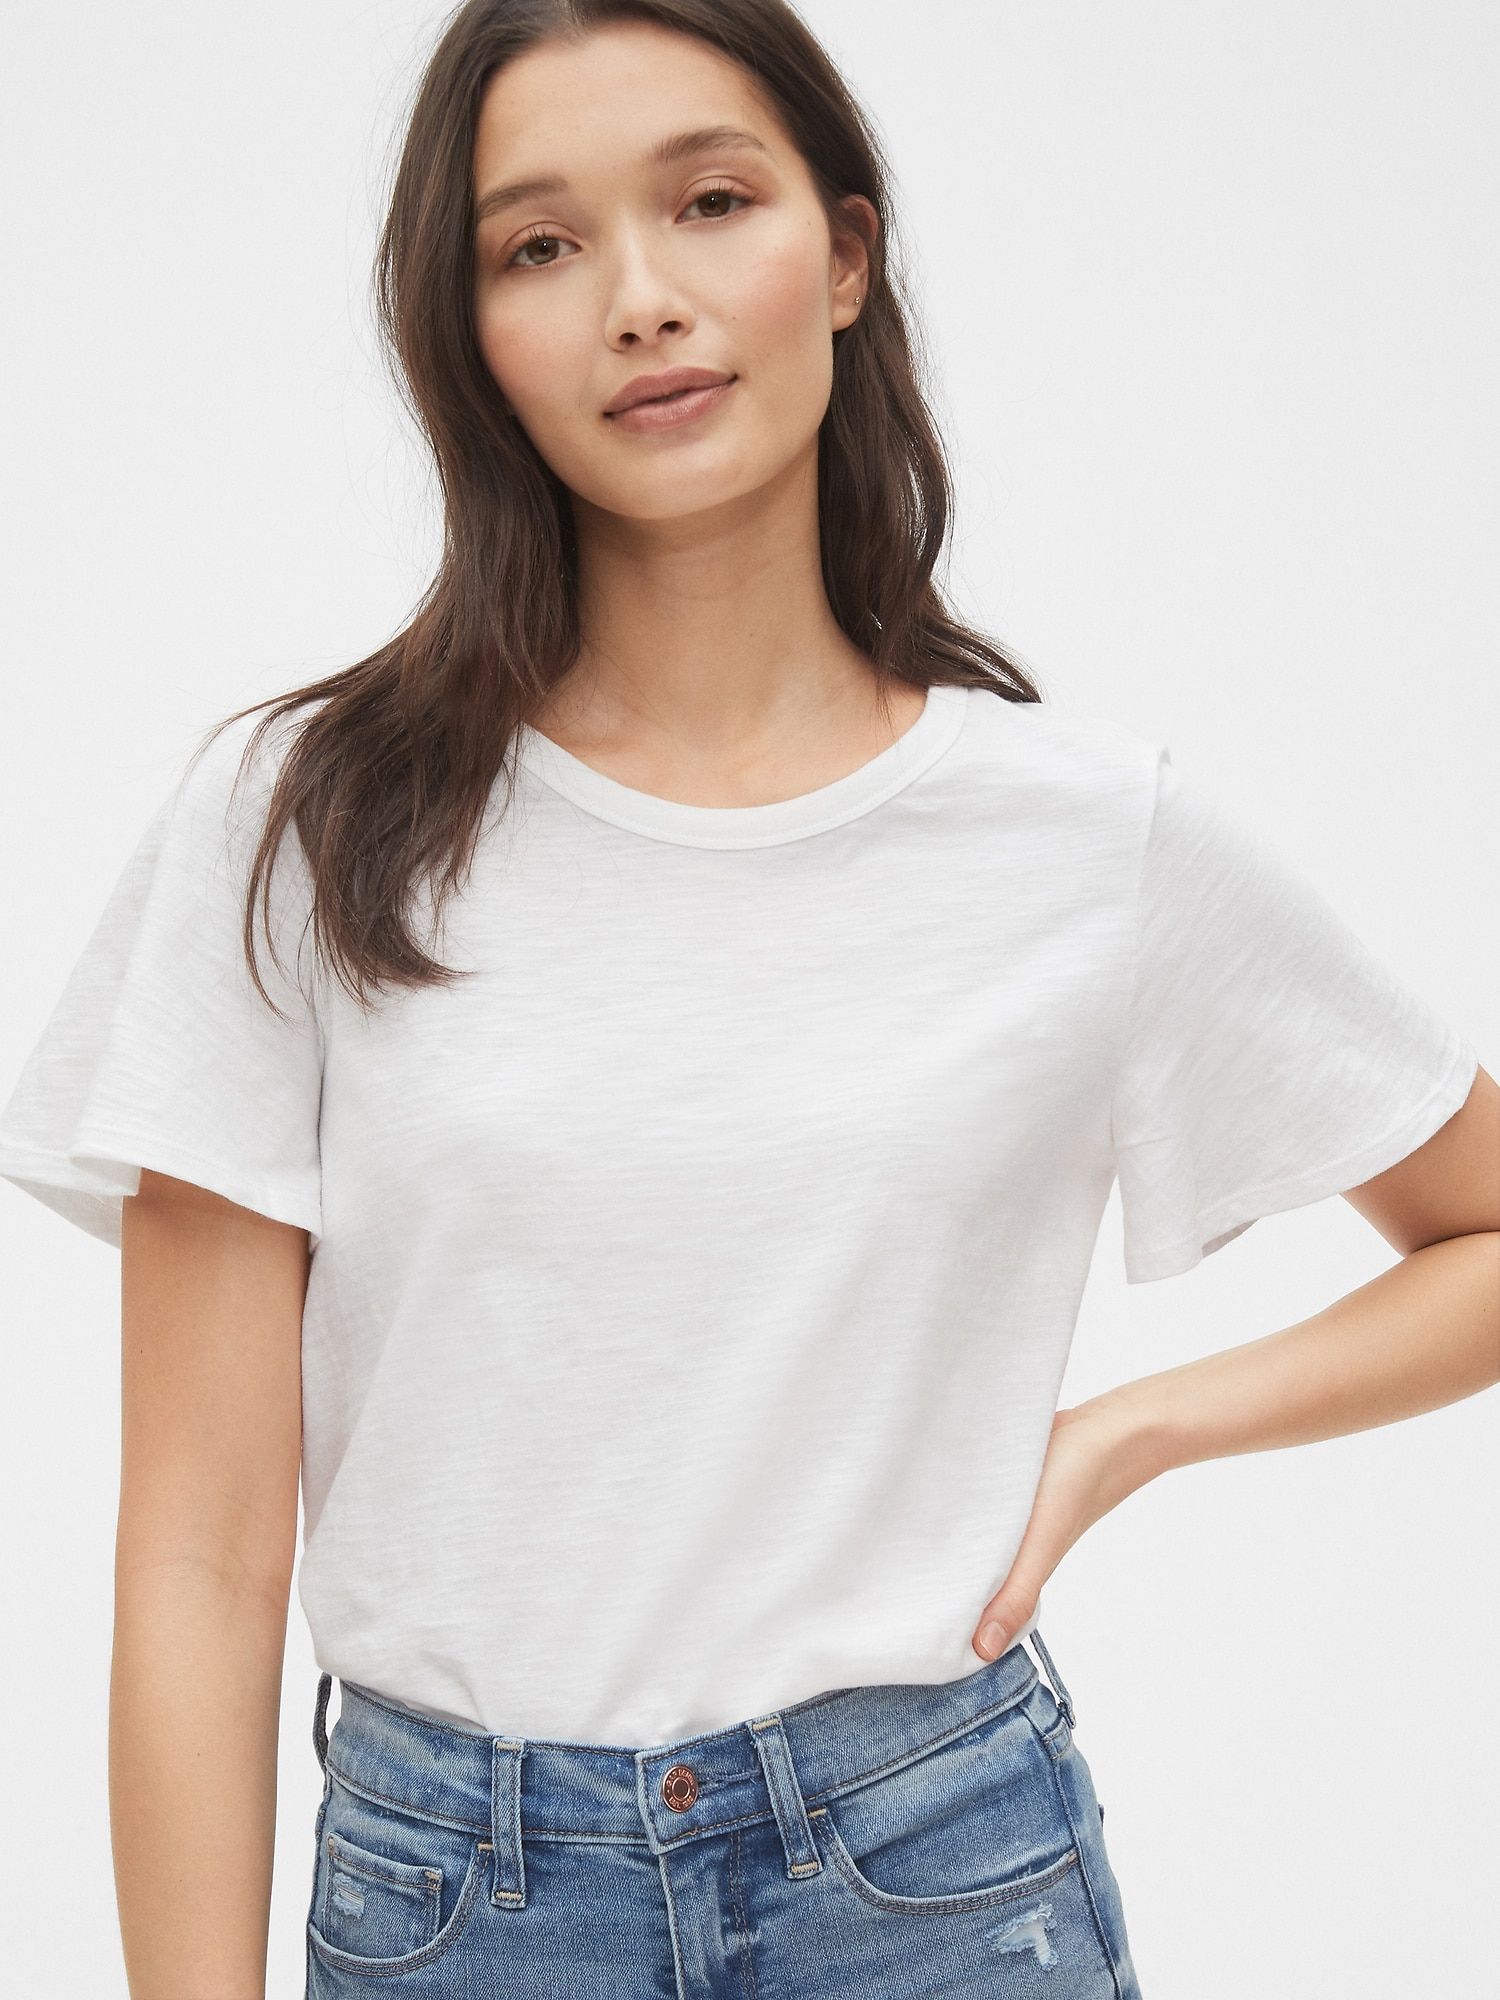 Buy best women's white t shirt uk - In stock